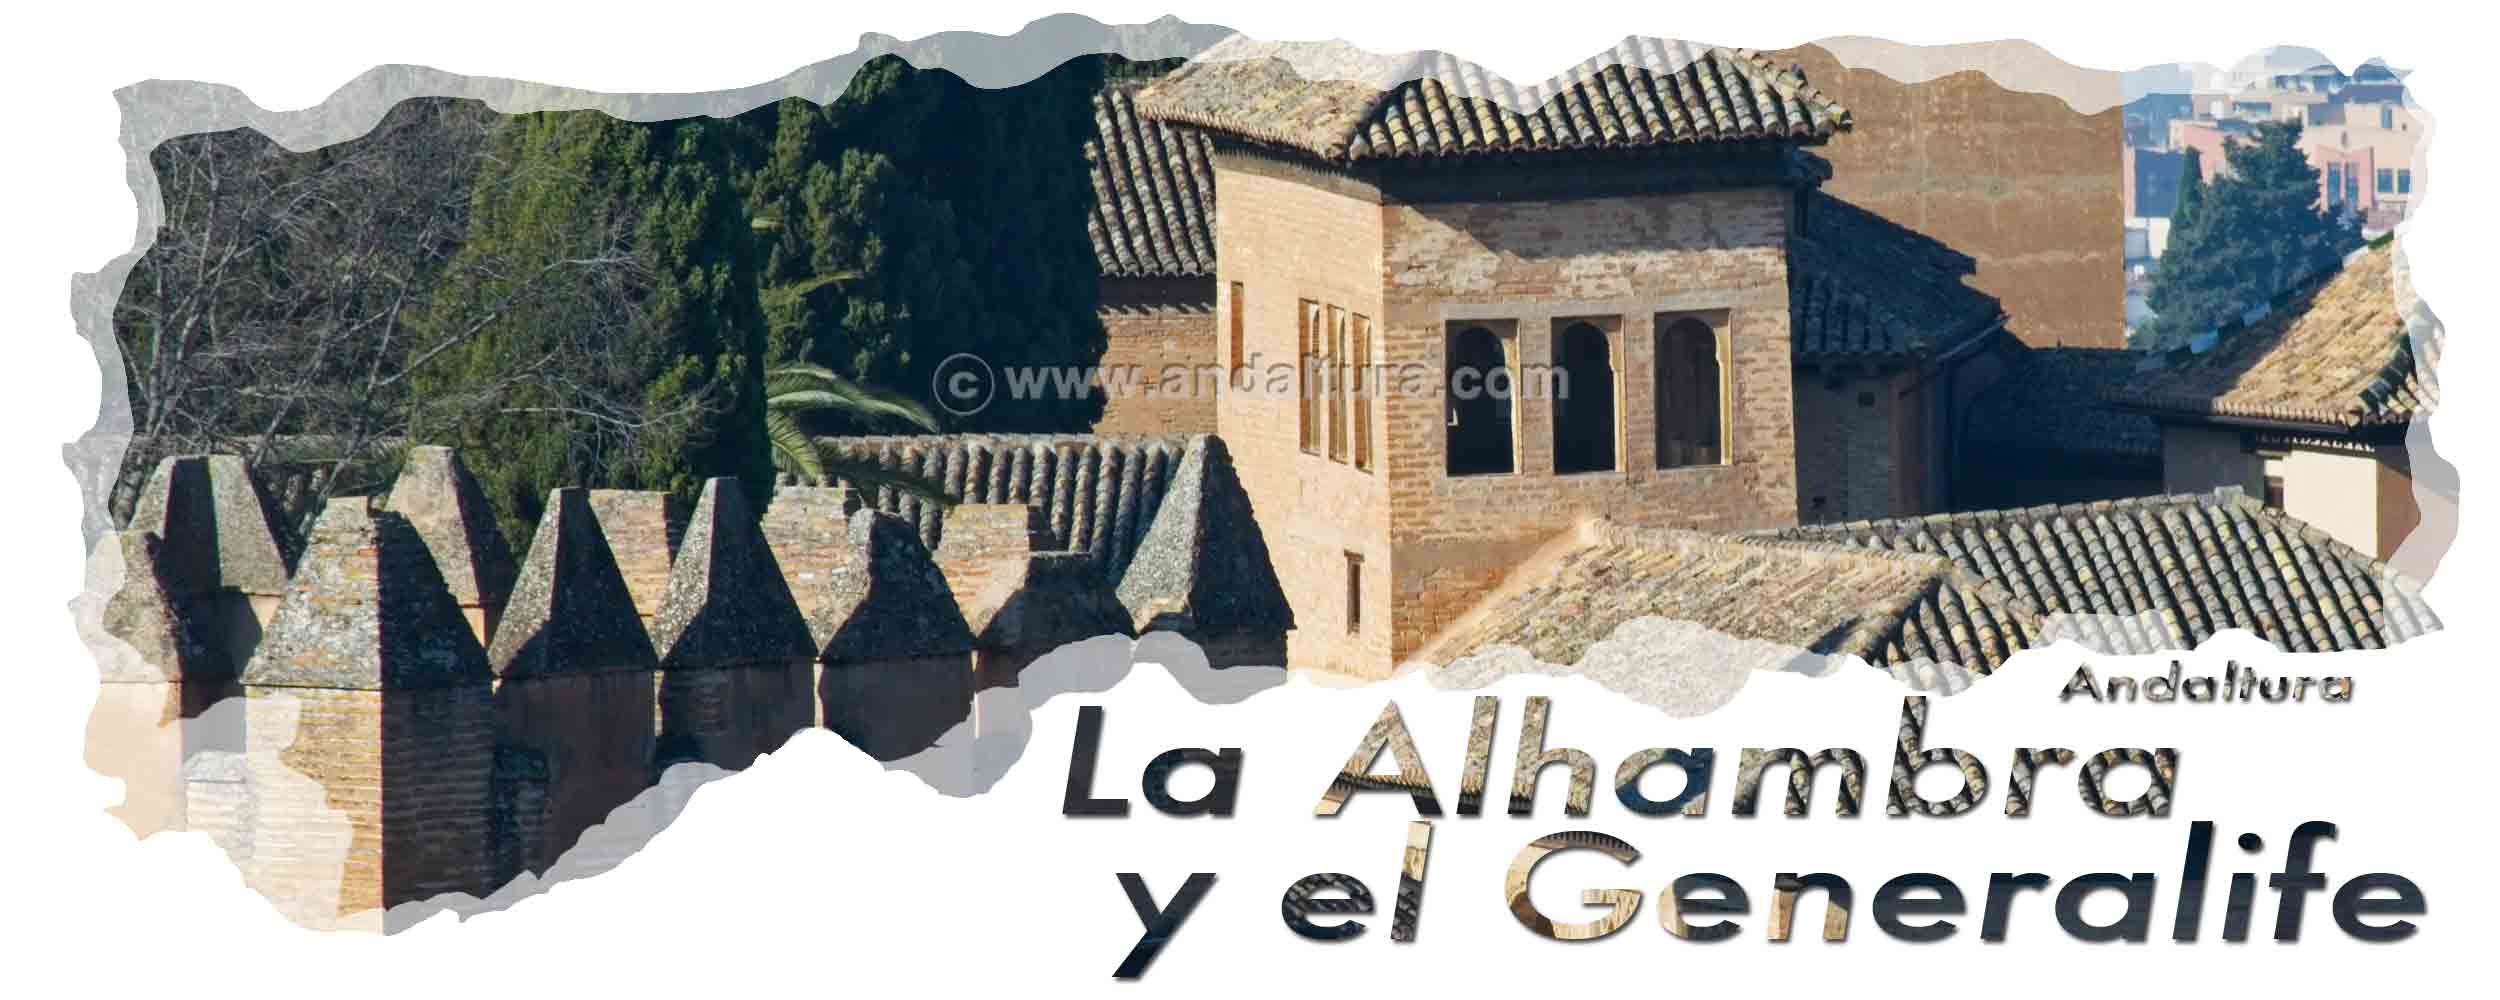 Cabecera de la Portada Exterior de la Puerta del Vino - Observatorio del Partal y almenas de la Torre de los Picos de la Alhambra